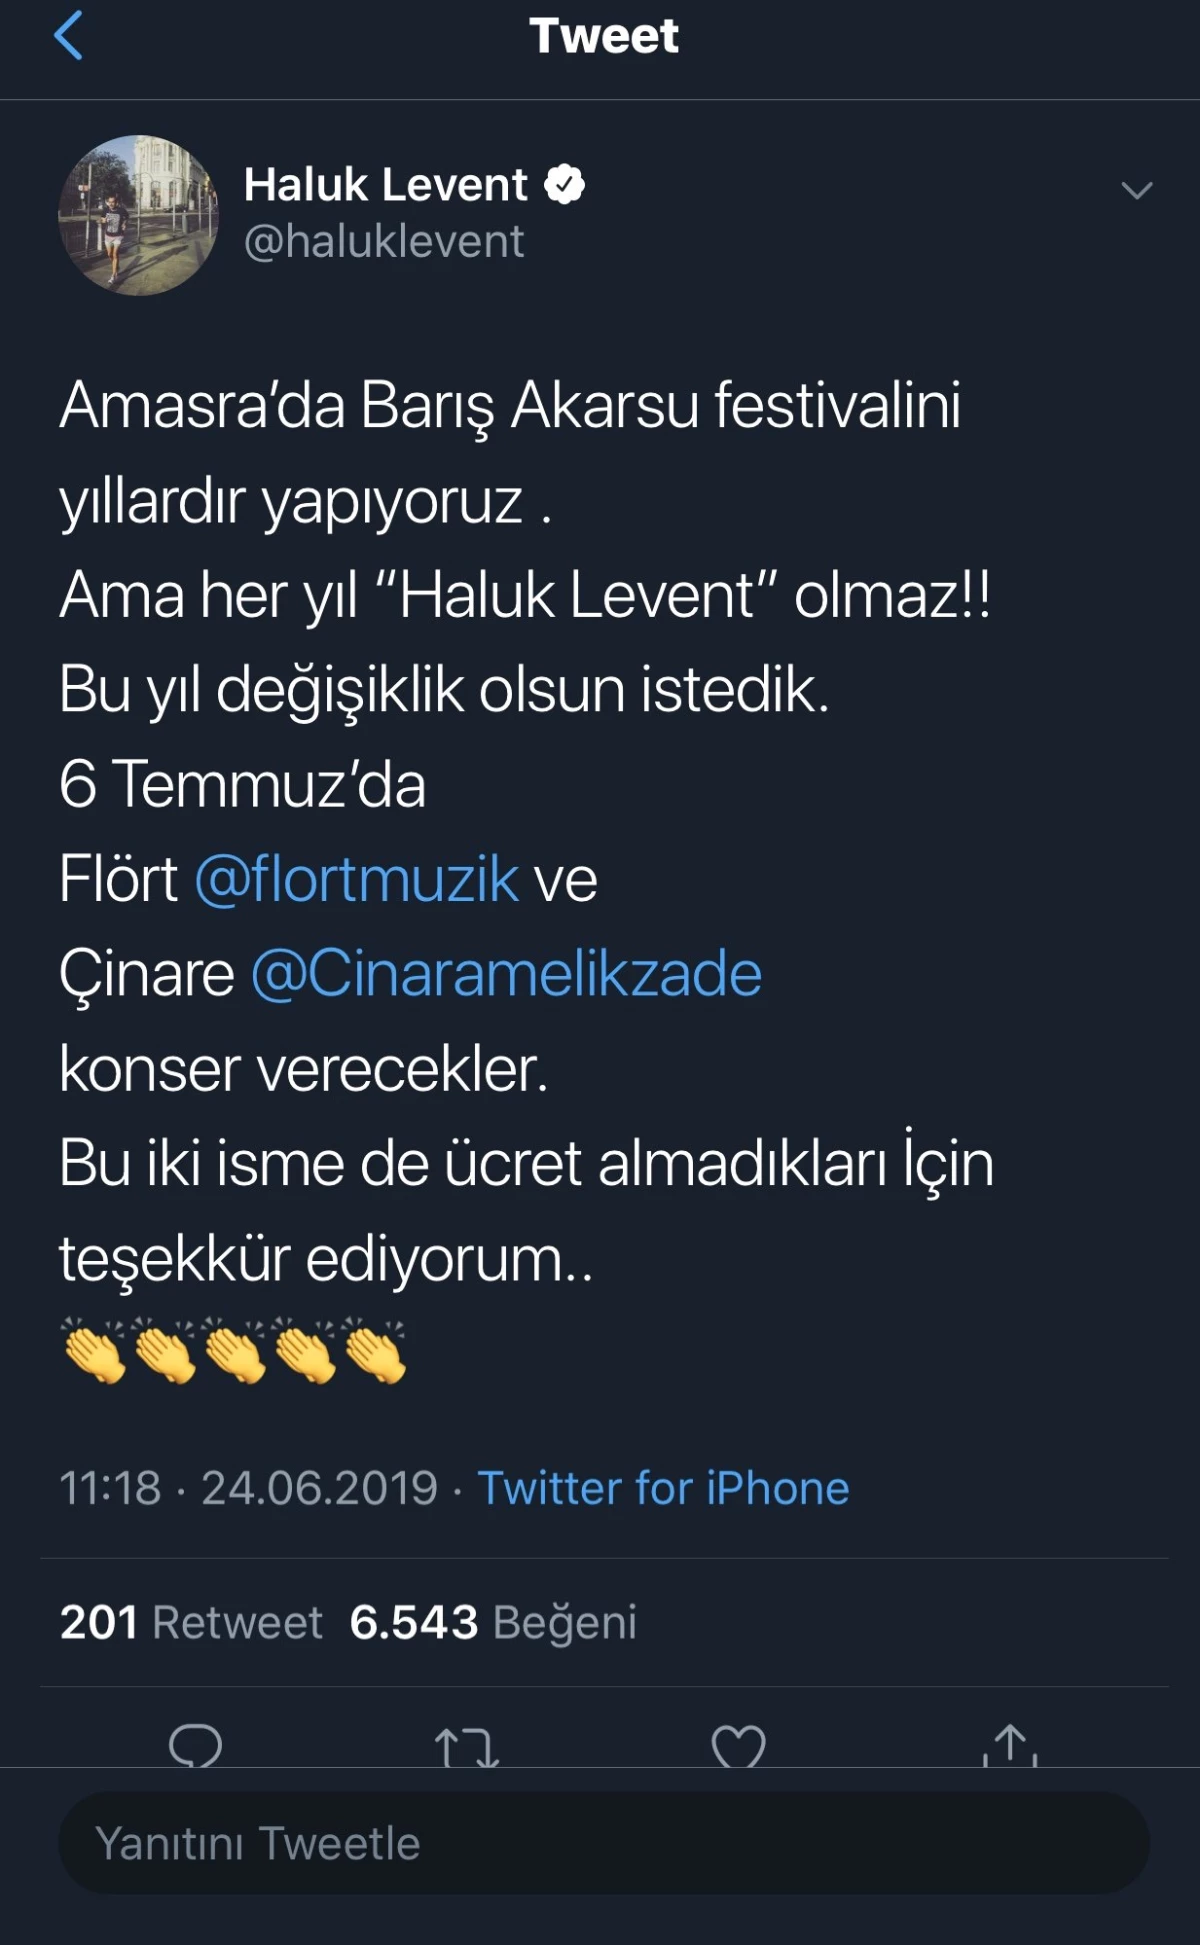 Haluk Levent yerine Azeri şarkıcı Cinare Melikzade konser verecek